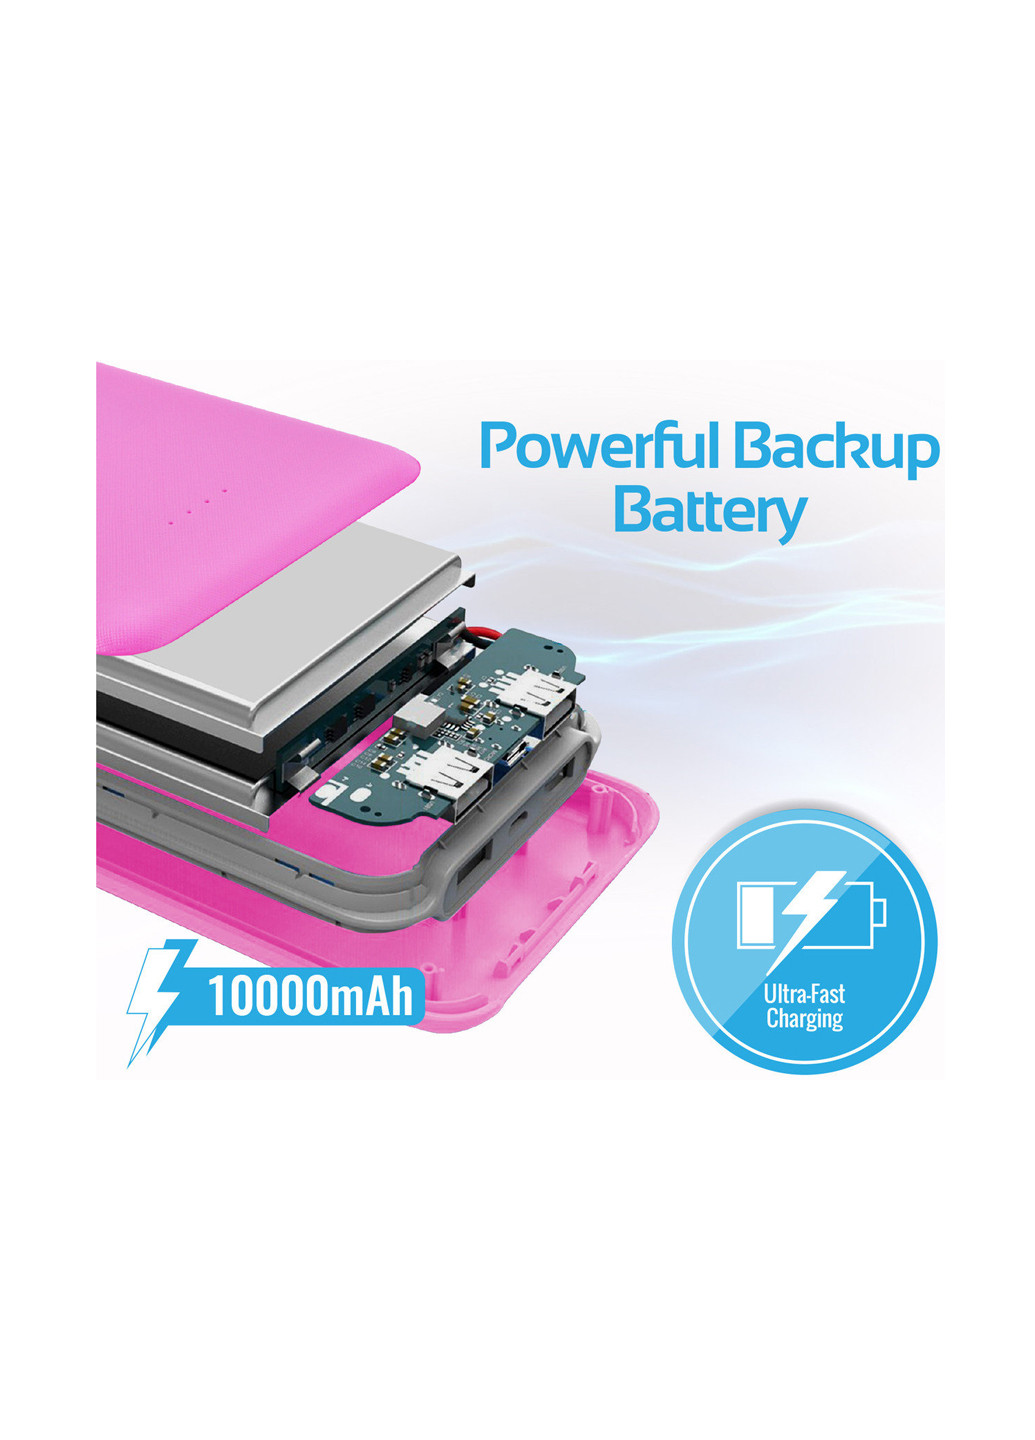 Універсальна батарея Voltag-10 Pink Promate 10000 мач voltag-10 (130565489)